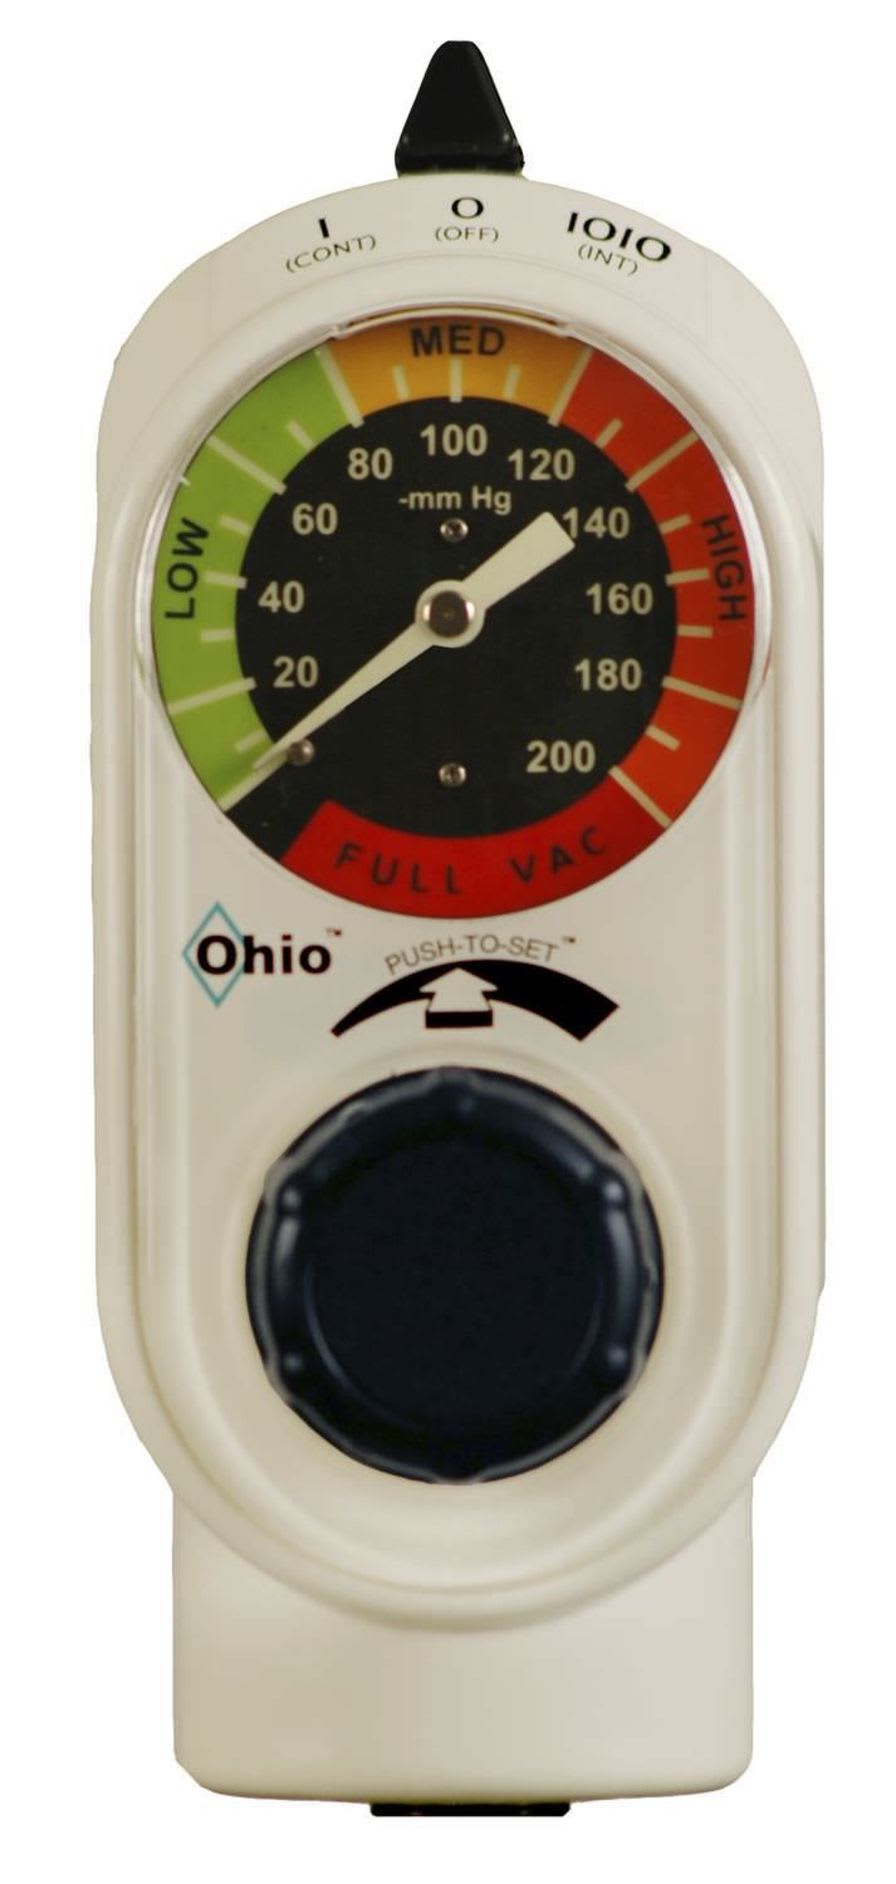 Vacuum regulator / plug-in type PUSH-TO-SET™ Ohio Medical